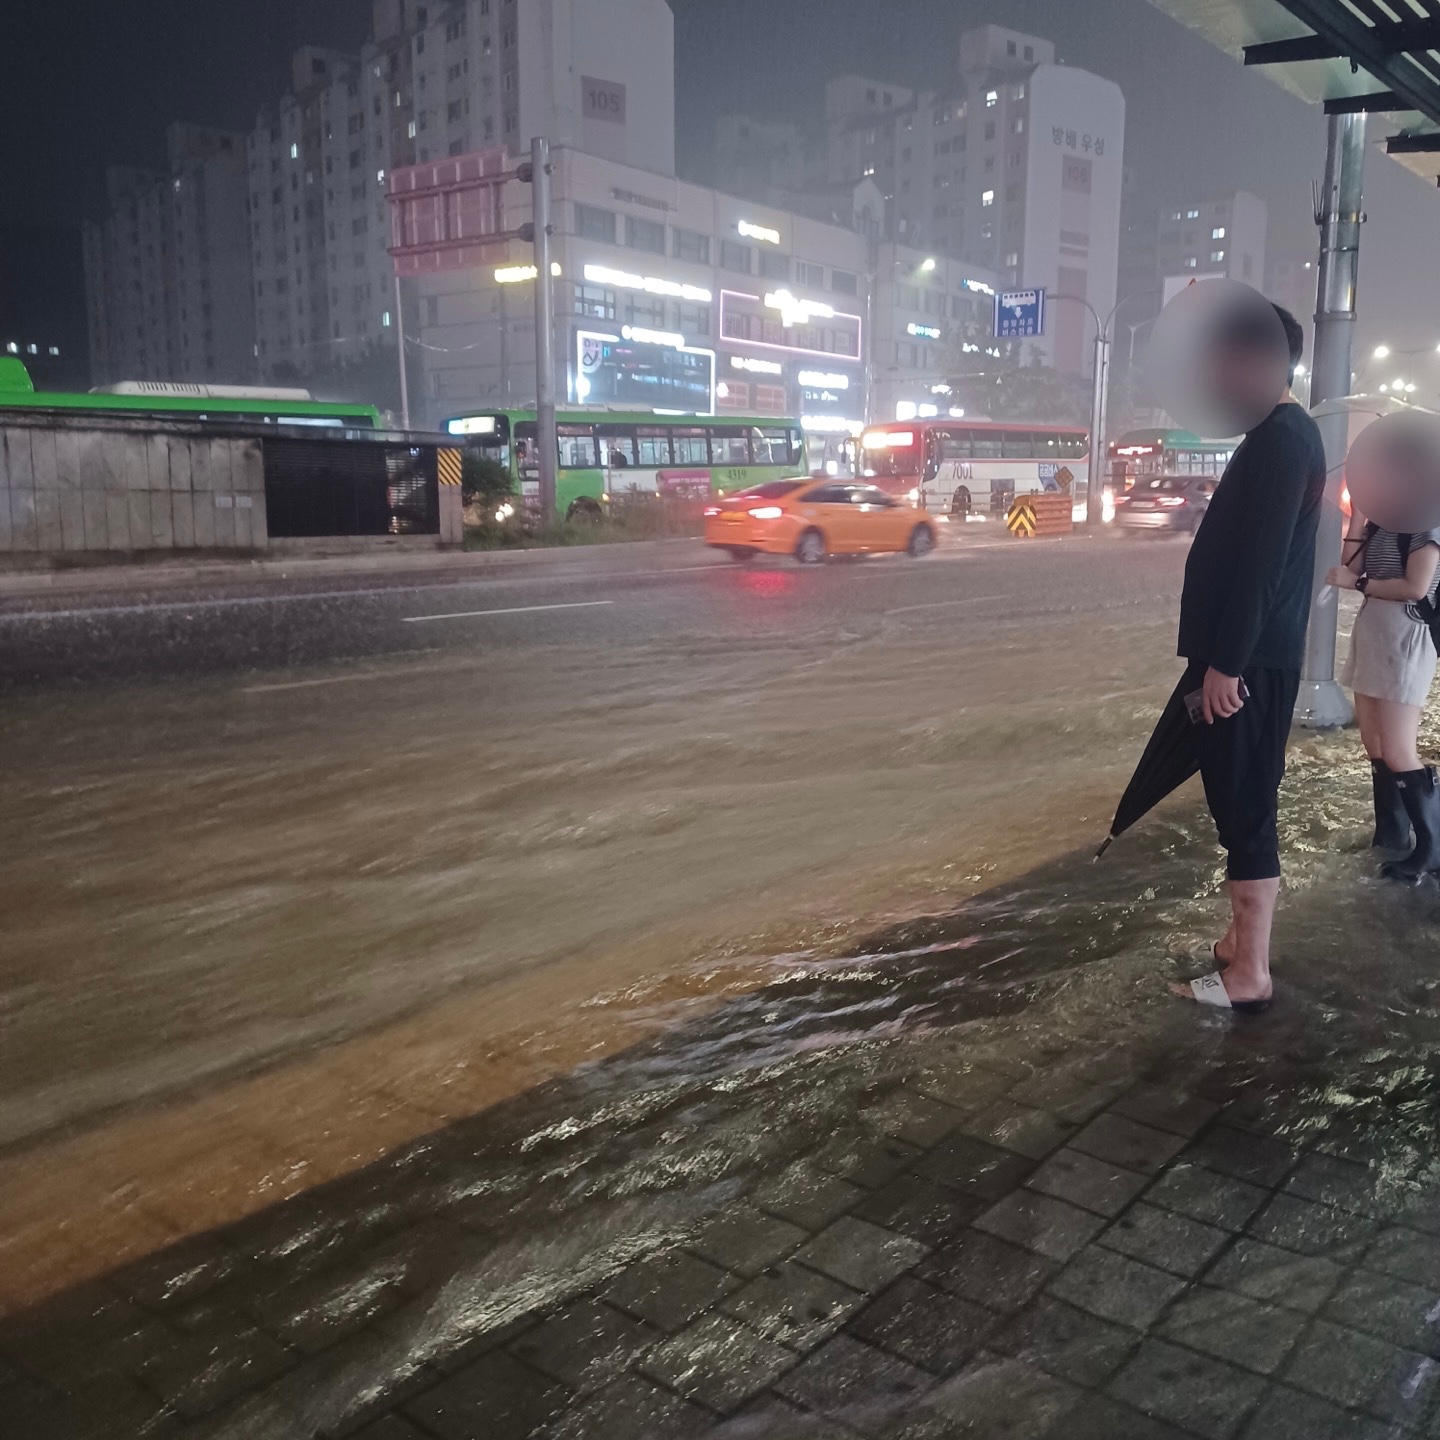 2022년 8월 8일 집중호우로 인해 거리에 물이 넘쳐 흐르고 있다. 위 사진은 해당 기사와 무관함. /사진=한국금융신문